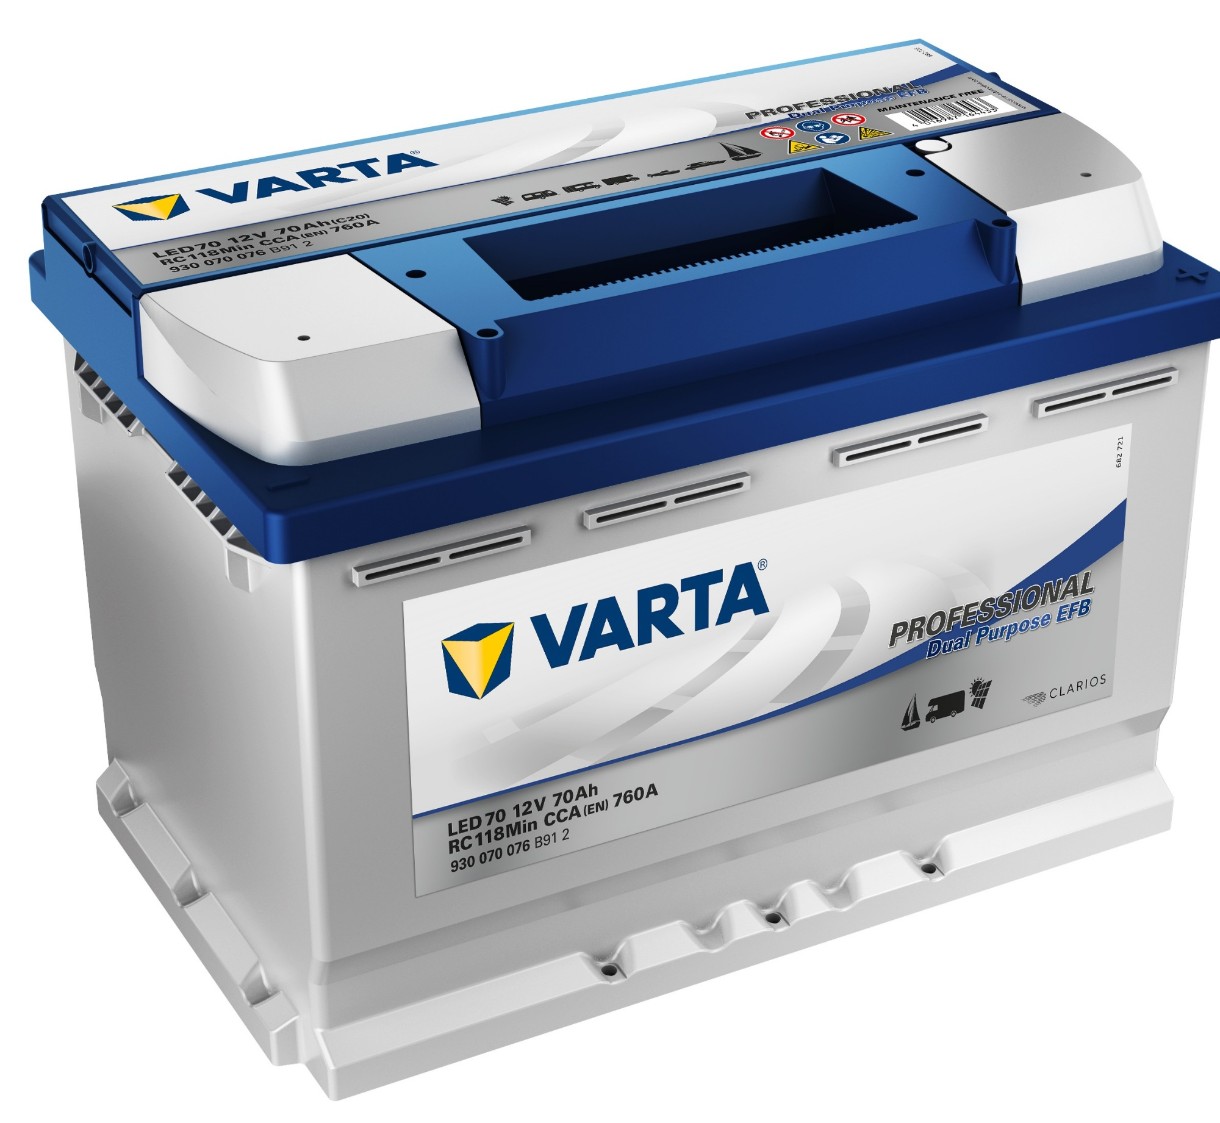 Автомобильный аккумулятор Varta Professional Dual Purpose EFB LED70 12V 70Ah (930 070 076 B912)